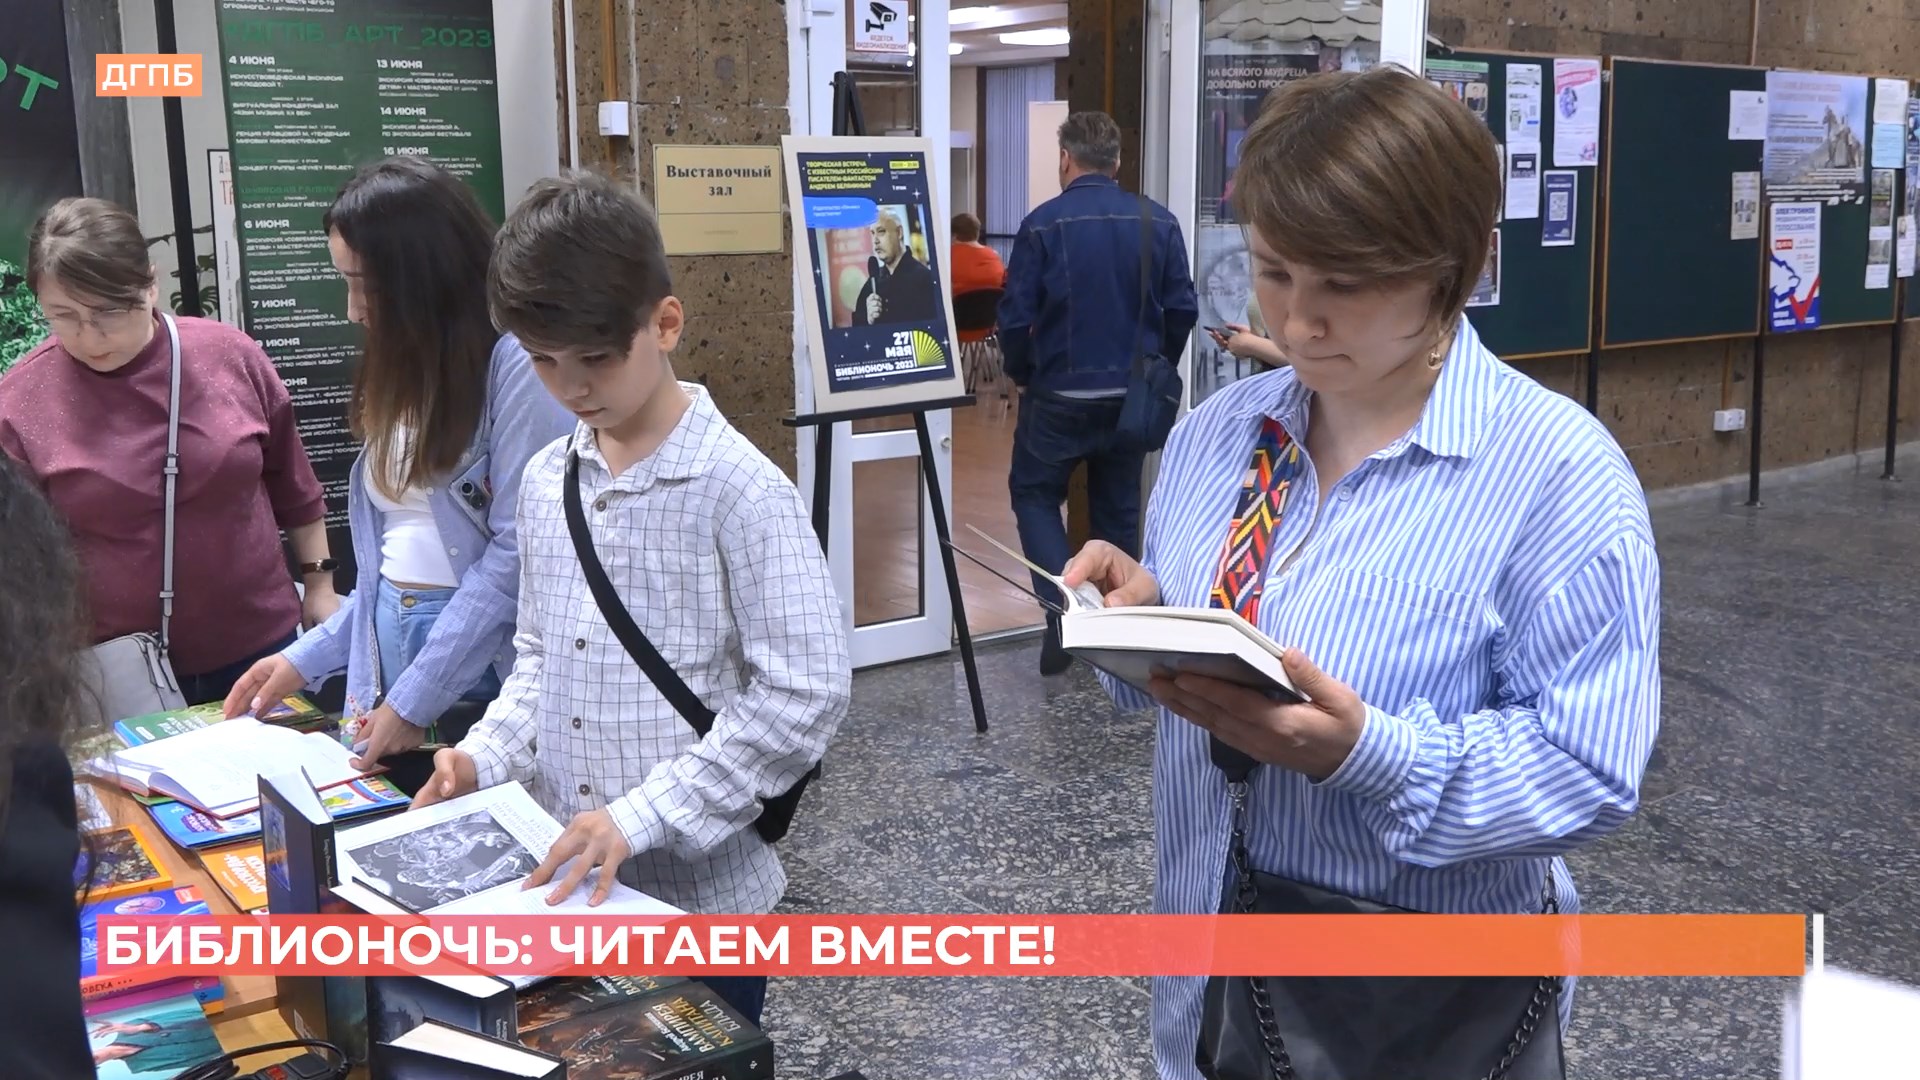 Читаем вместе: библионочь прошла в Ростове